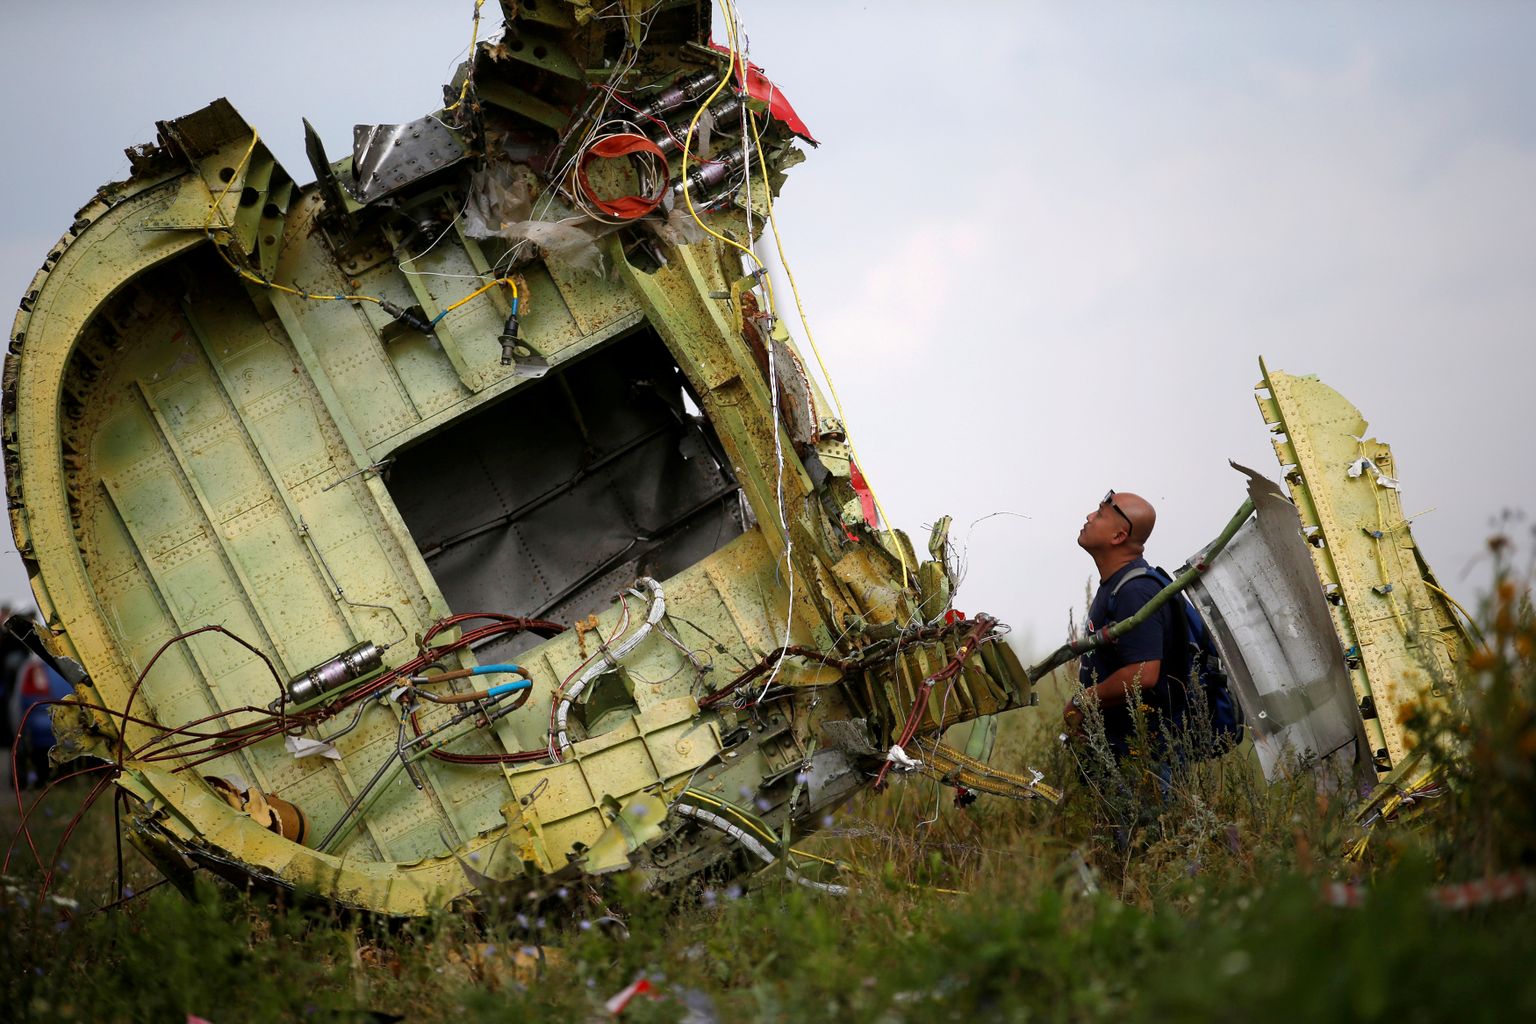 Malaysia Airlinesi lend MH17 oma vägivallaga katkestatud reisi lõpp-punktis Hrabove põllul.